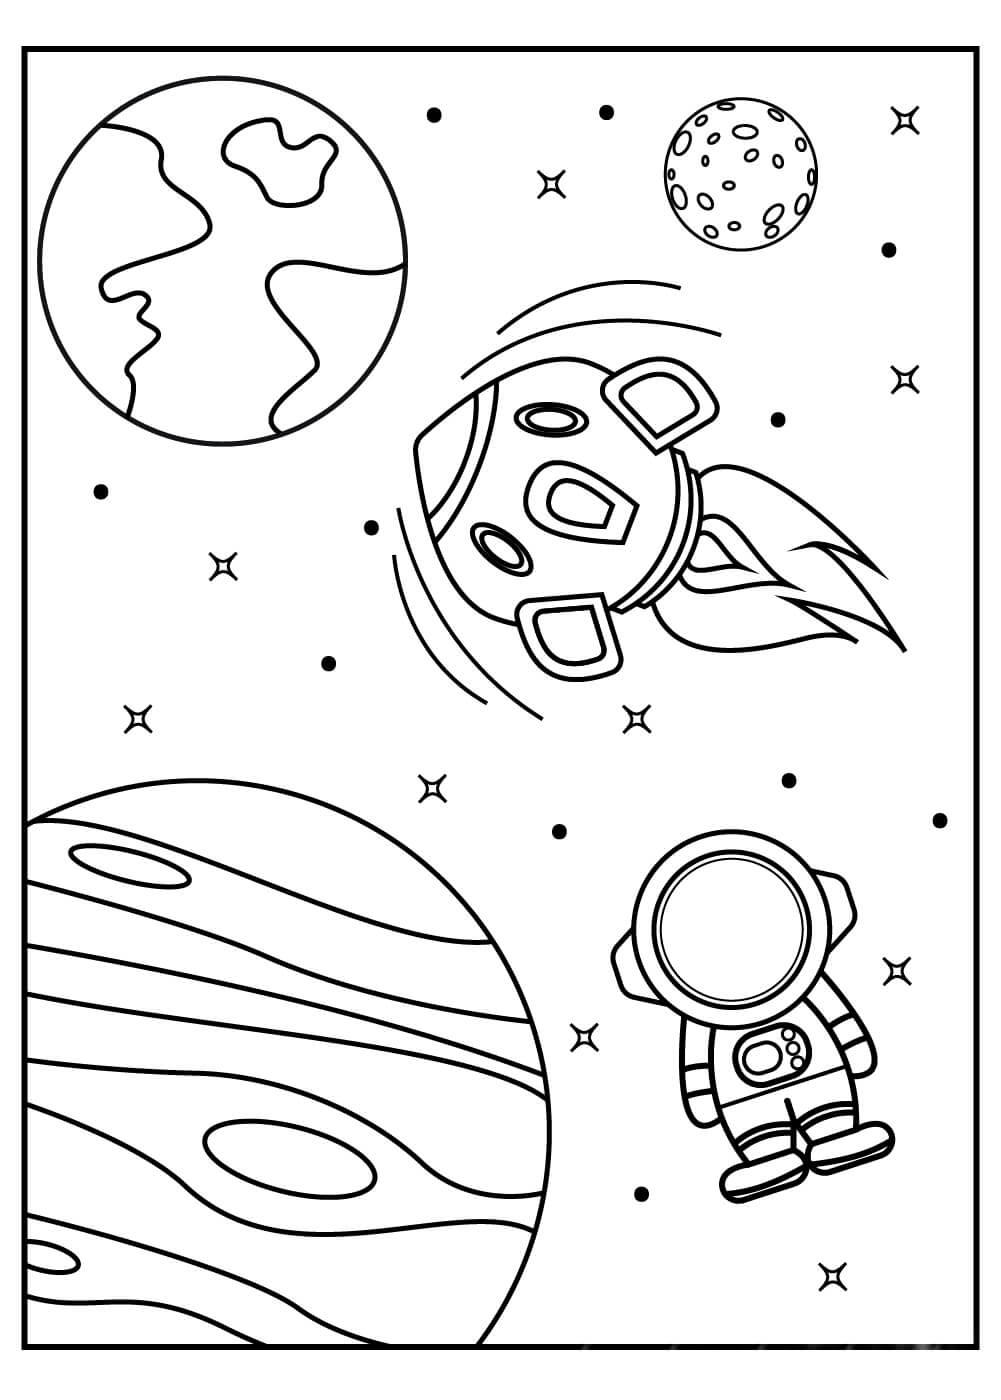 Foguete e Astronauta do Espaço Sideral para colorir